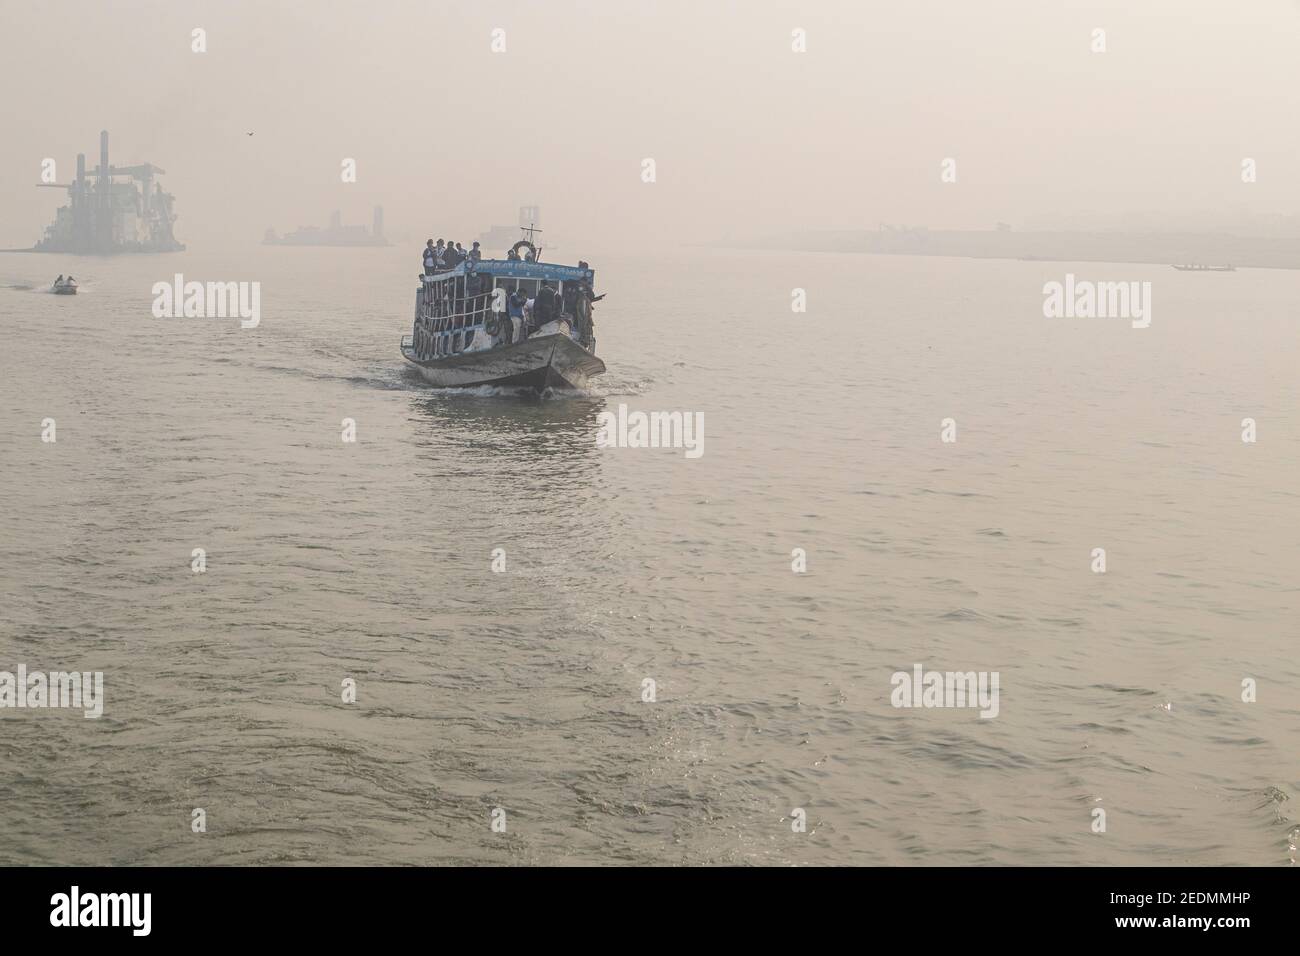 Bangladesch ist ein Land der Flüsse. Der Wassertransport ist hier eines der wichtigsten Verkehrssysteme. Lauch, Fähre, Boot und Schnellboot ist das Hauptfahrzeug hier. Stockfoto